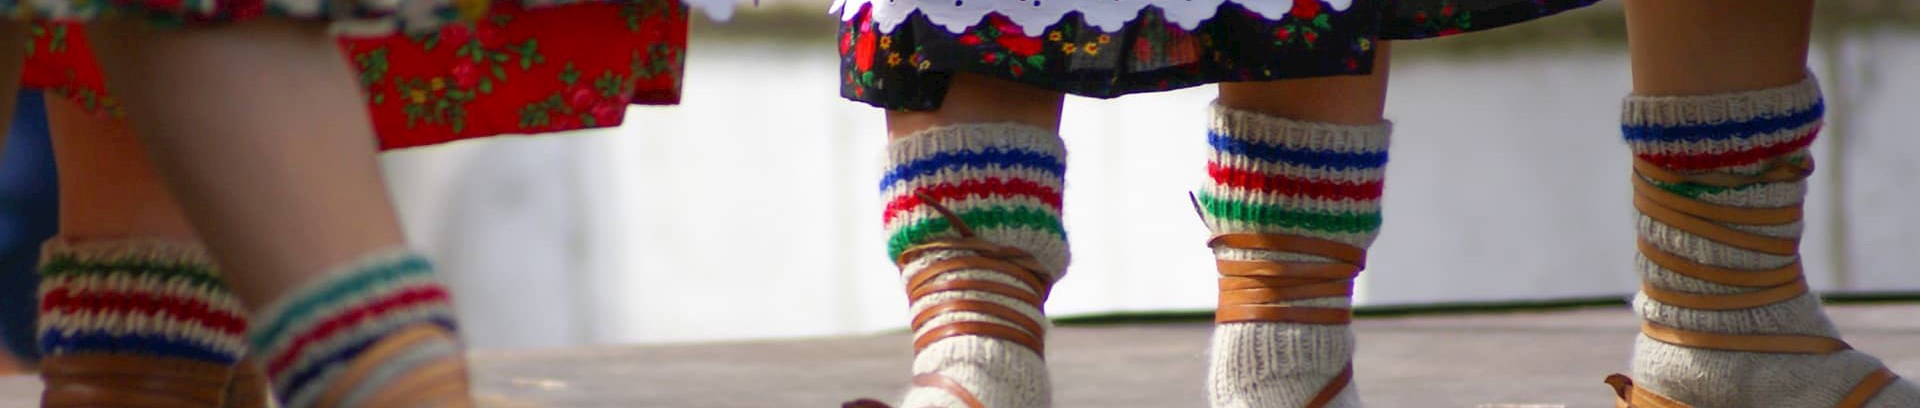 Billede af fødderne af polske folkedansere med uldne striksokker i lædersko